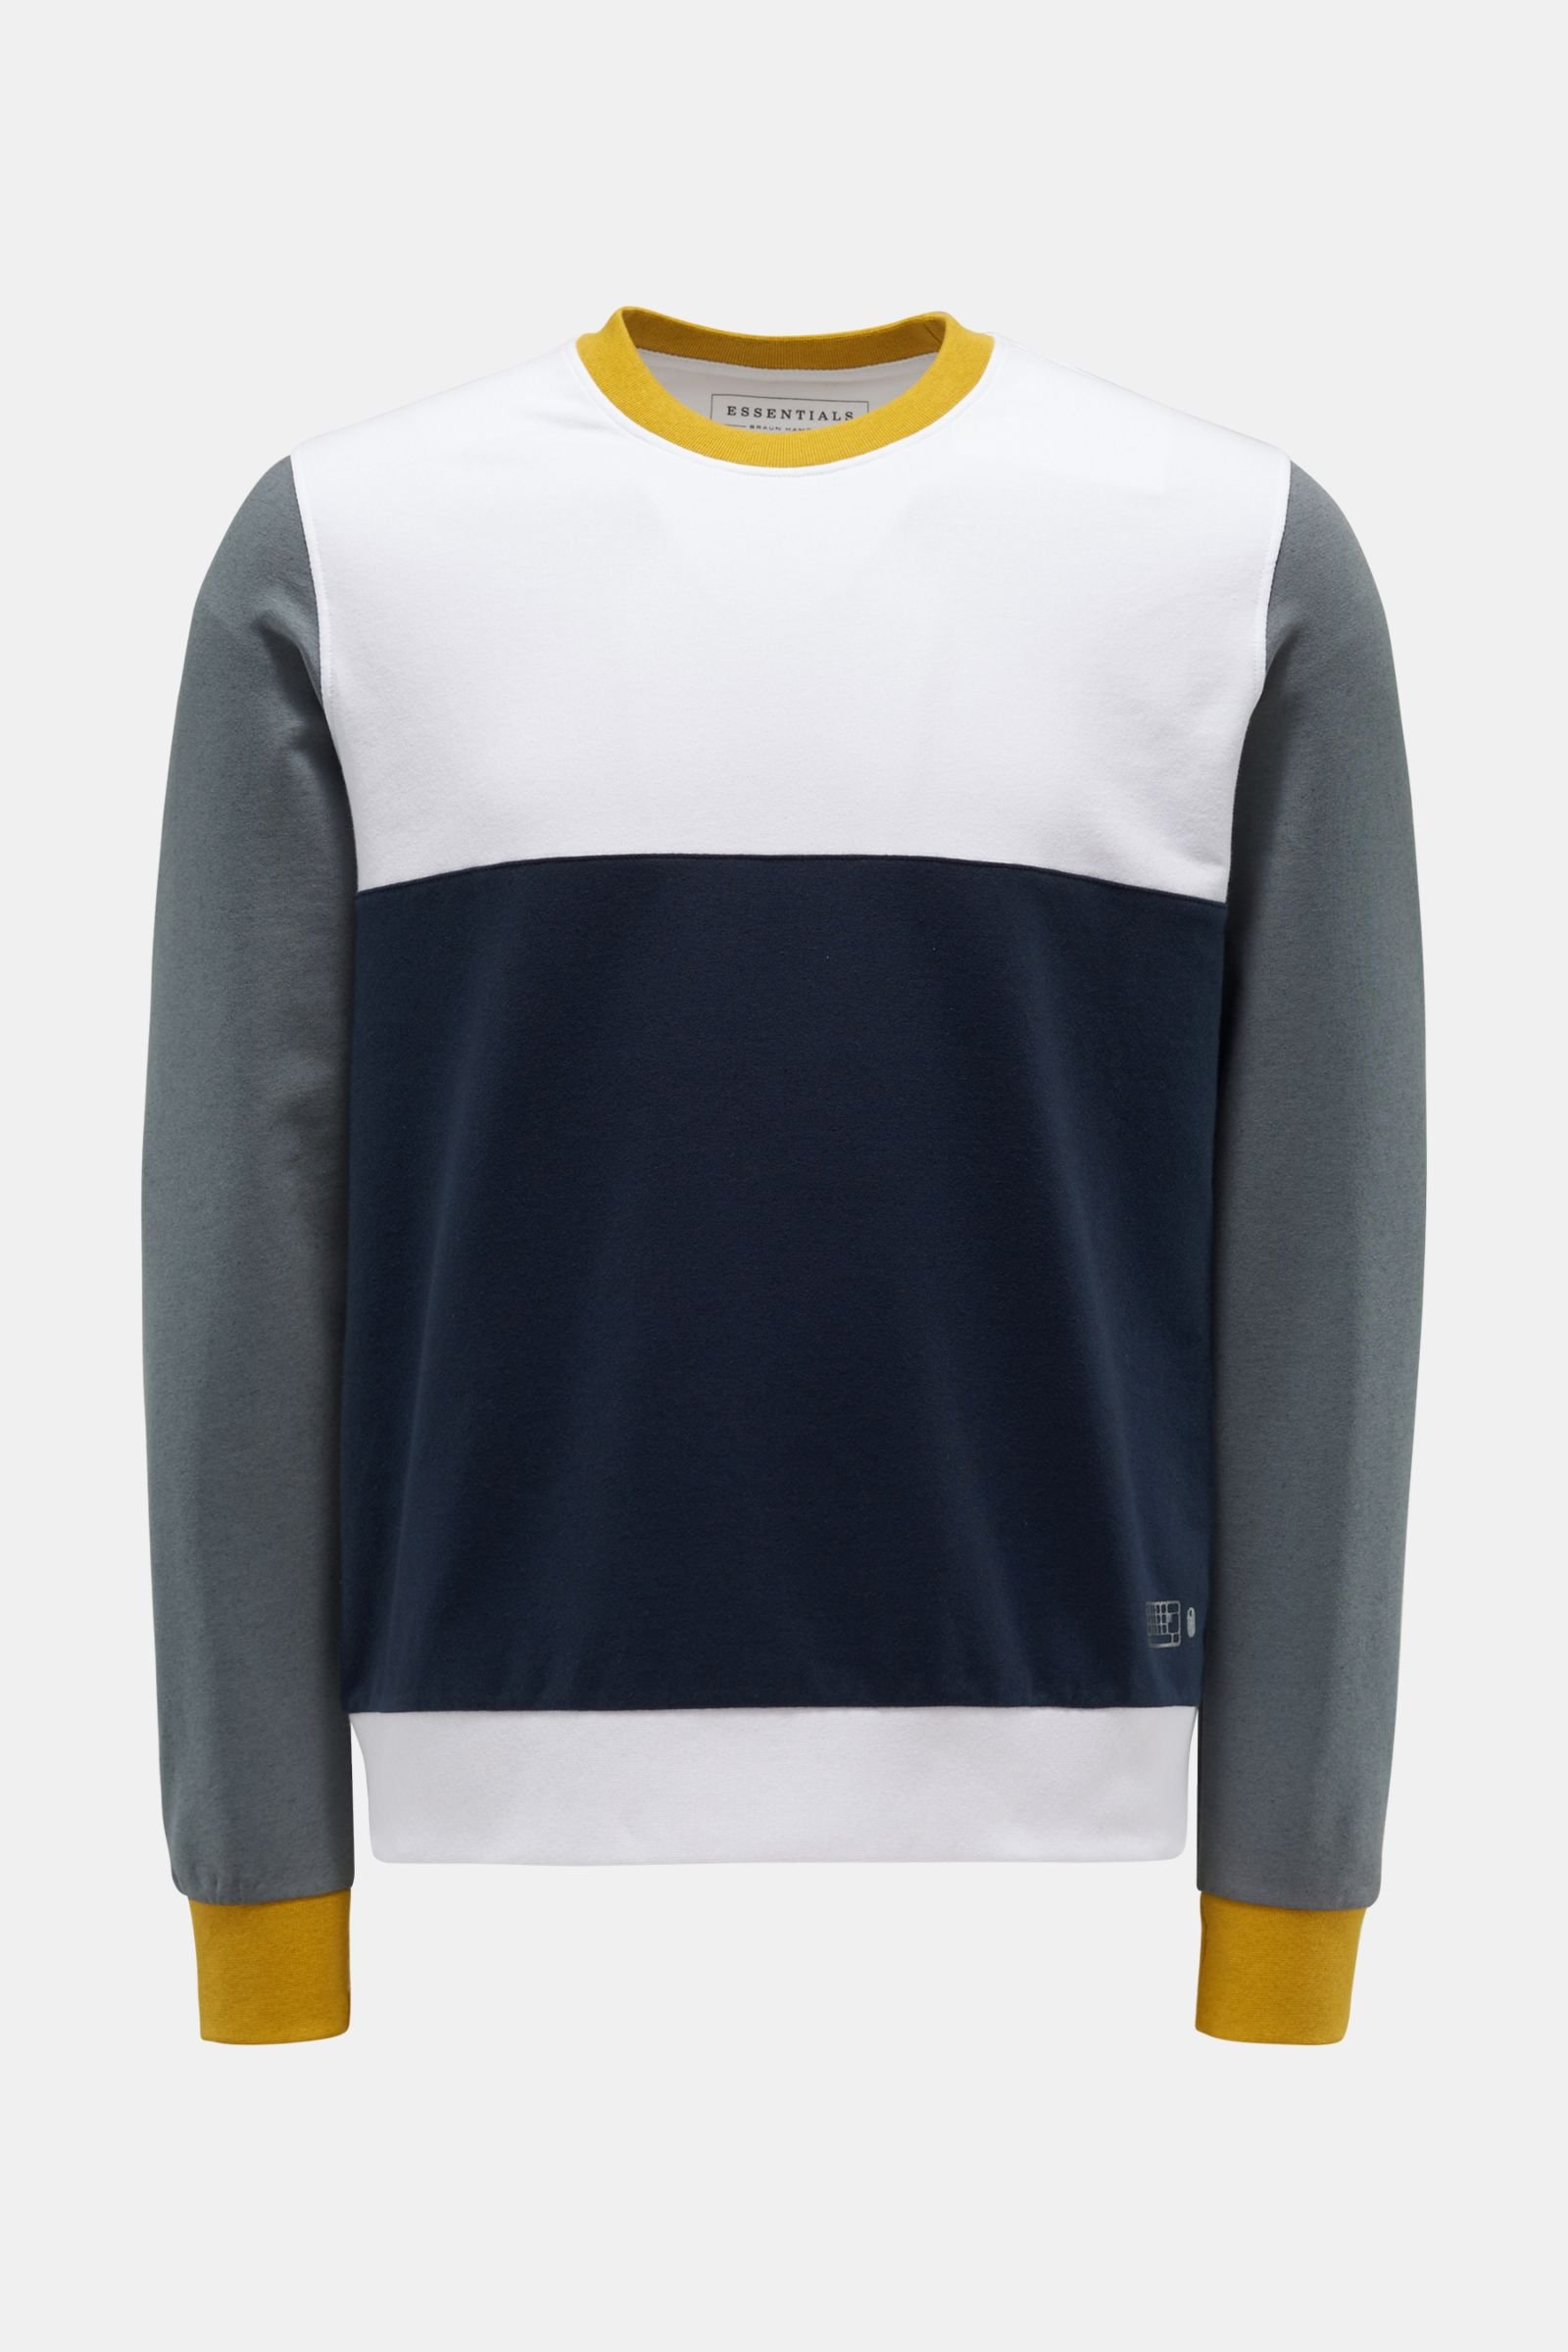 Rundhals-Sweatshirt weiß/navy/gelb